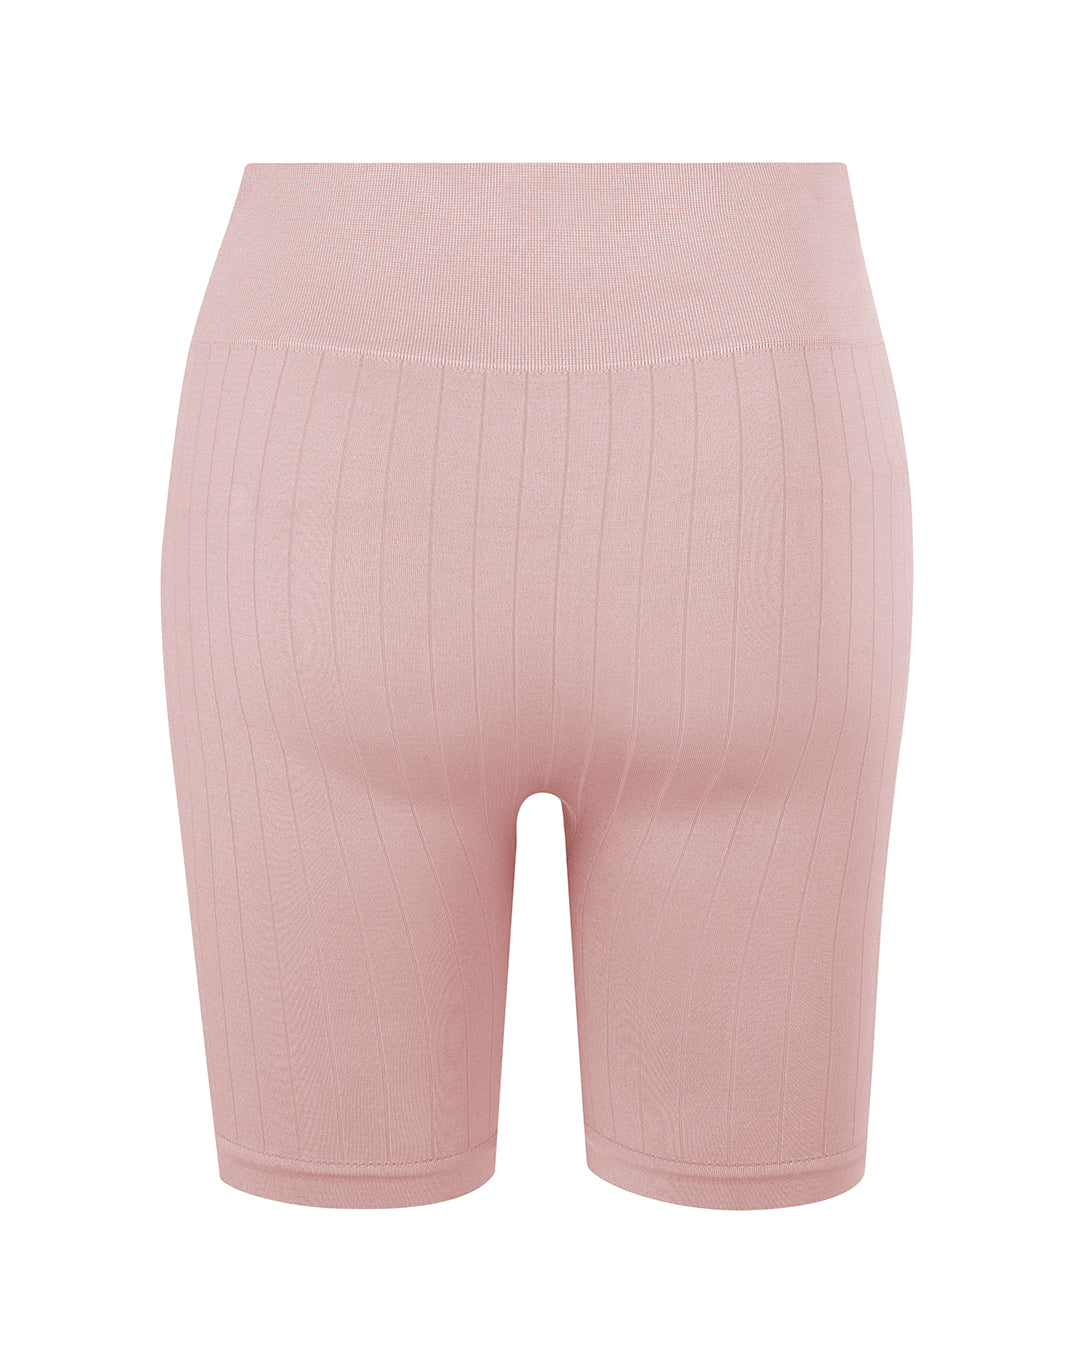 FLUID Flat Ribbed Shorts | Blush | Image 3